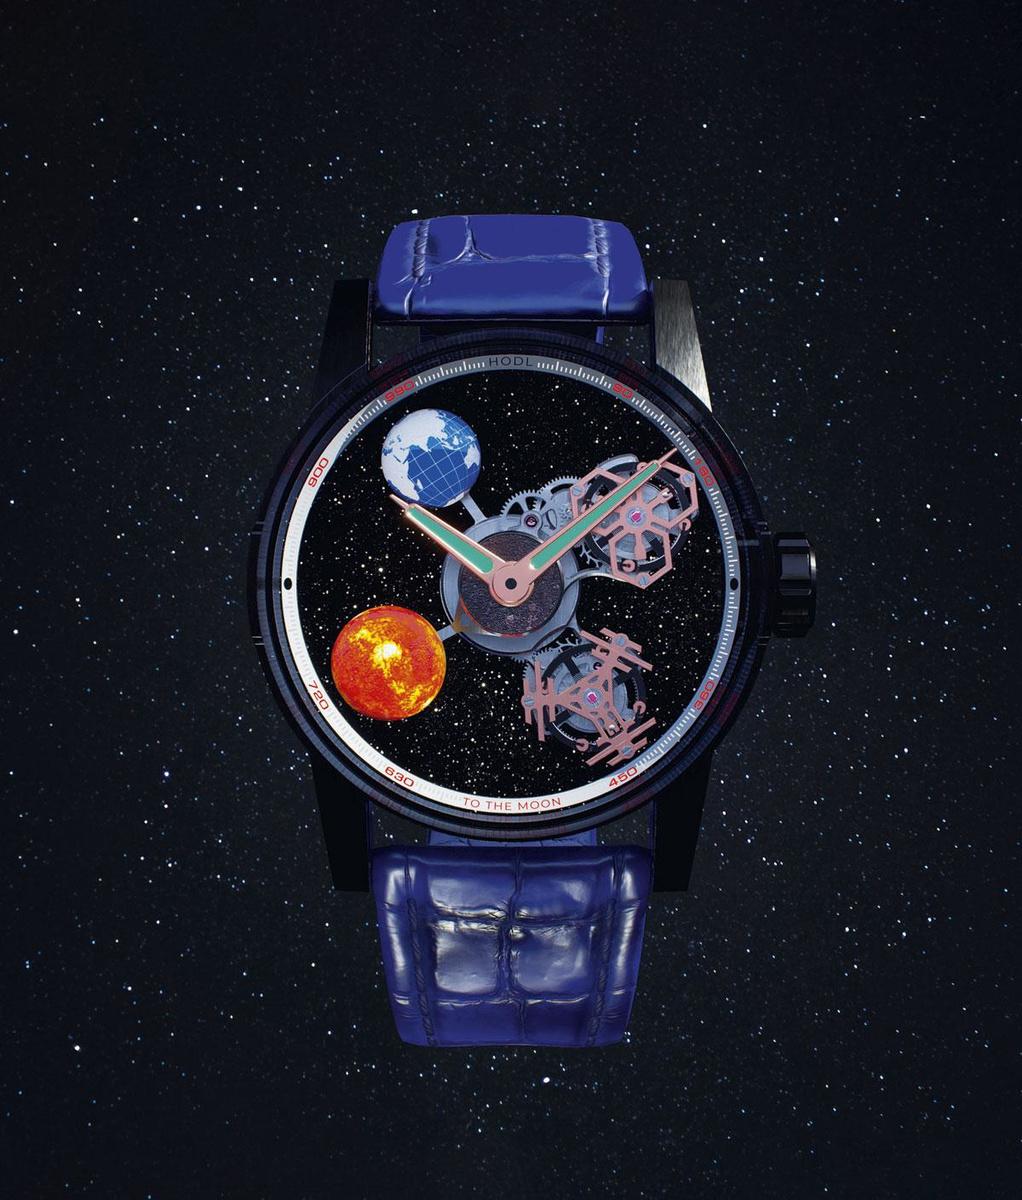 Recordtempo Het traditionele label Louis Moinet gooide duizend NFT's, geïnspireerd op de Iconic Space Recolution 2021 Edition Super Watch, op web 3.0 en verkocht die in een recordtempo